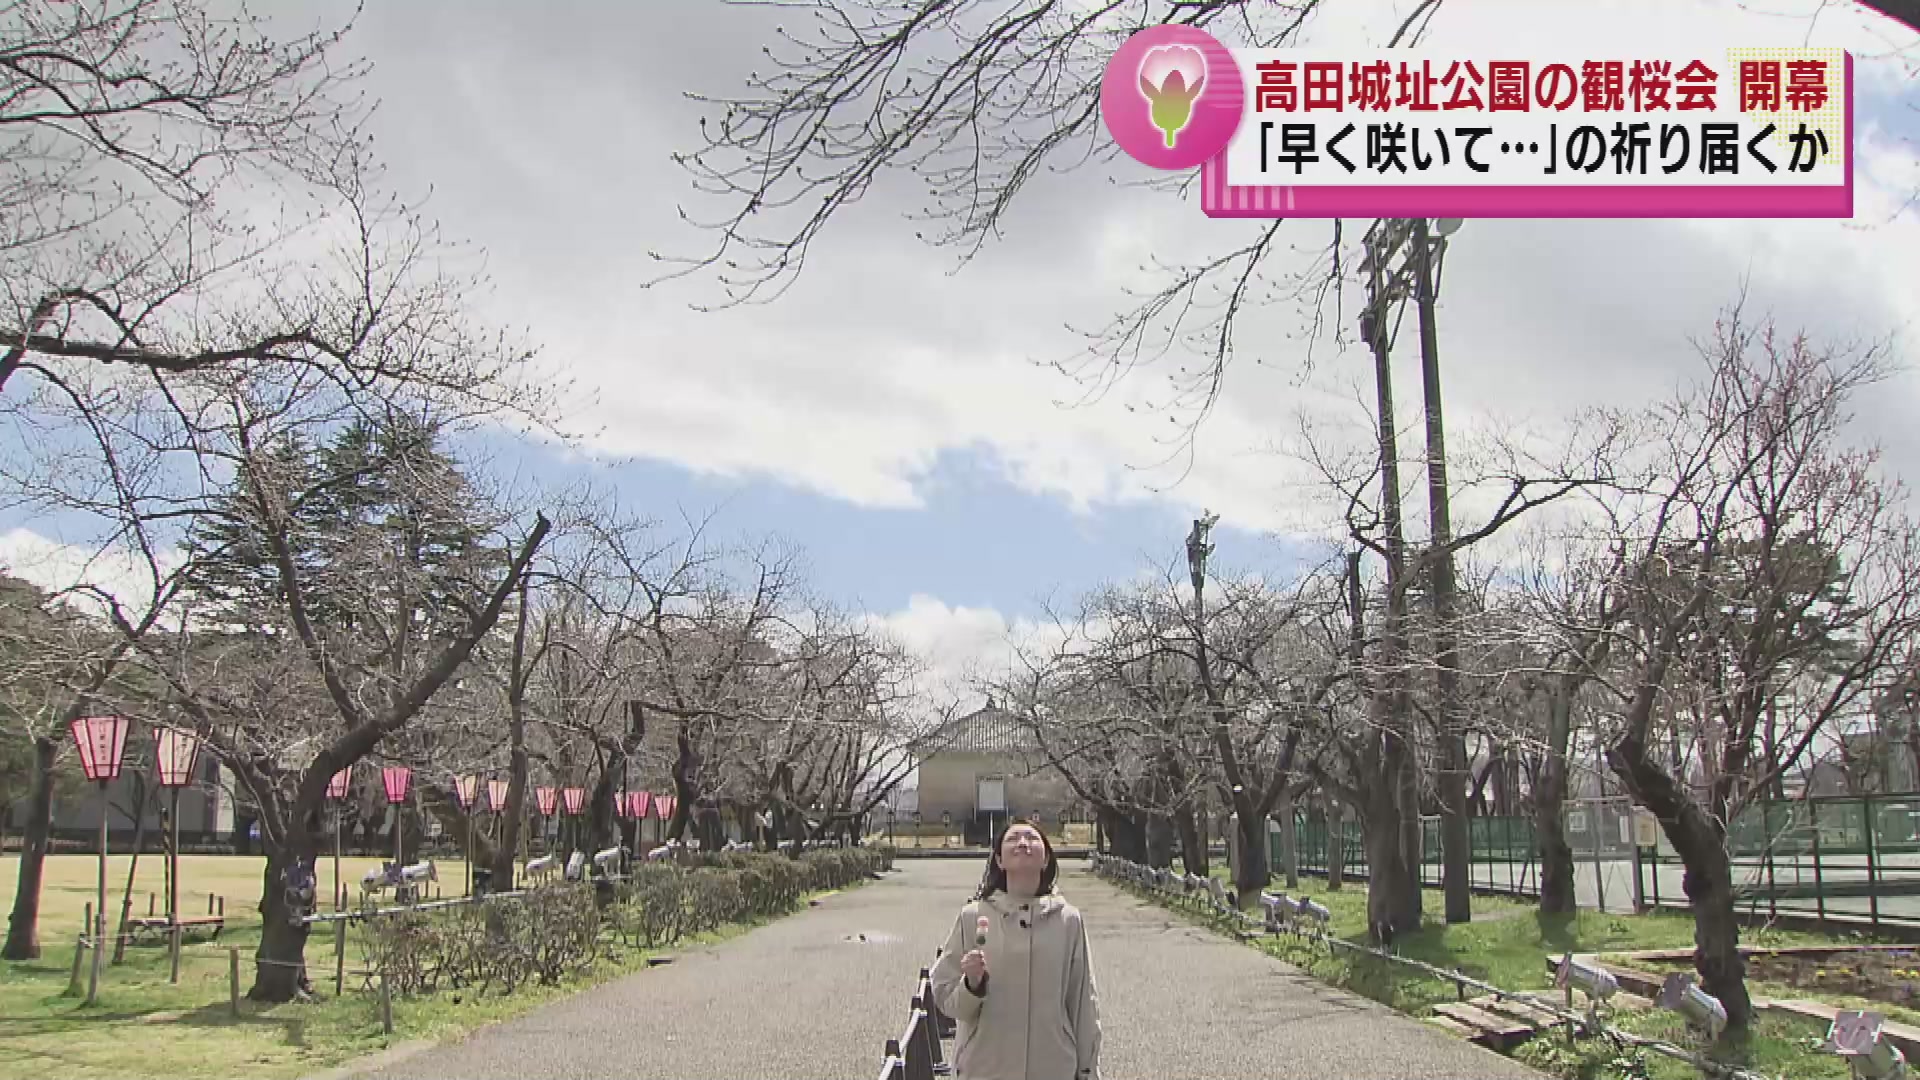 “日本三大夜桜”のひとつ 高田城址公園で観桜会が始まる　開花は4月4日の予想 《新潟》